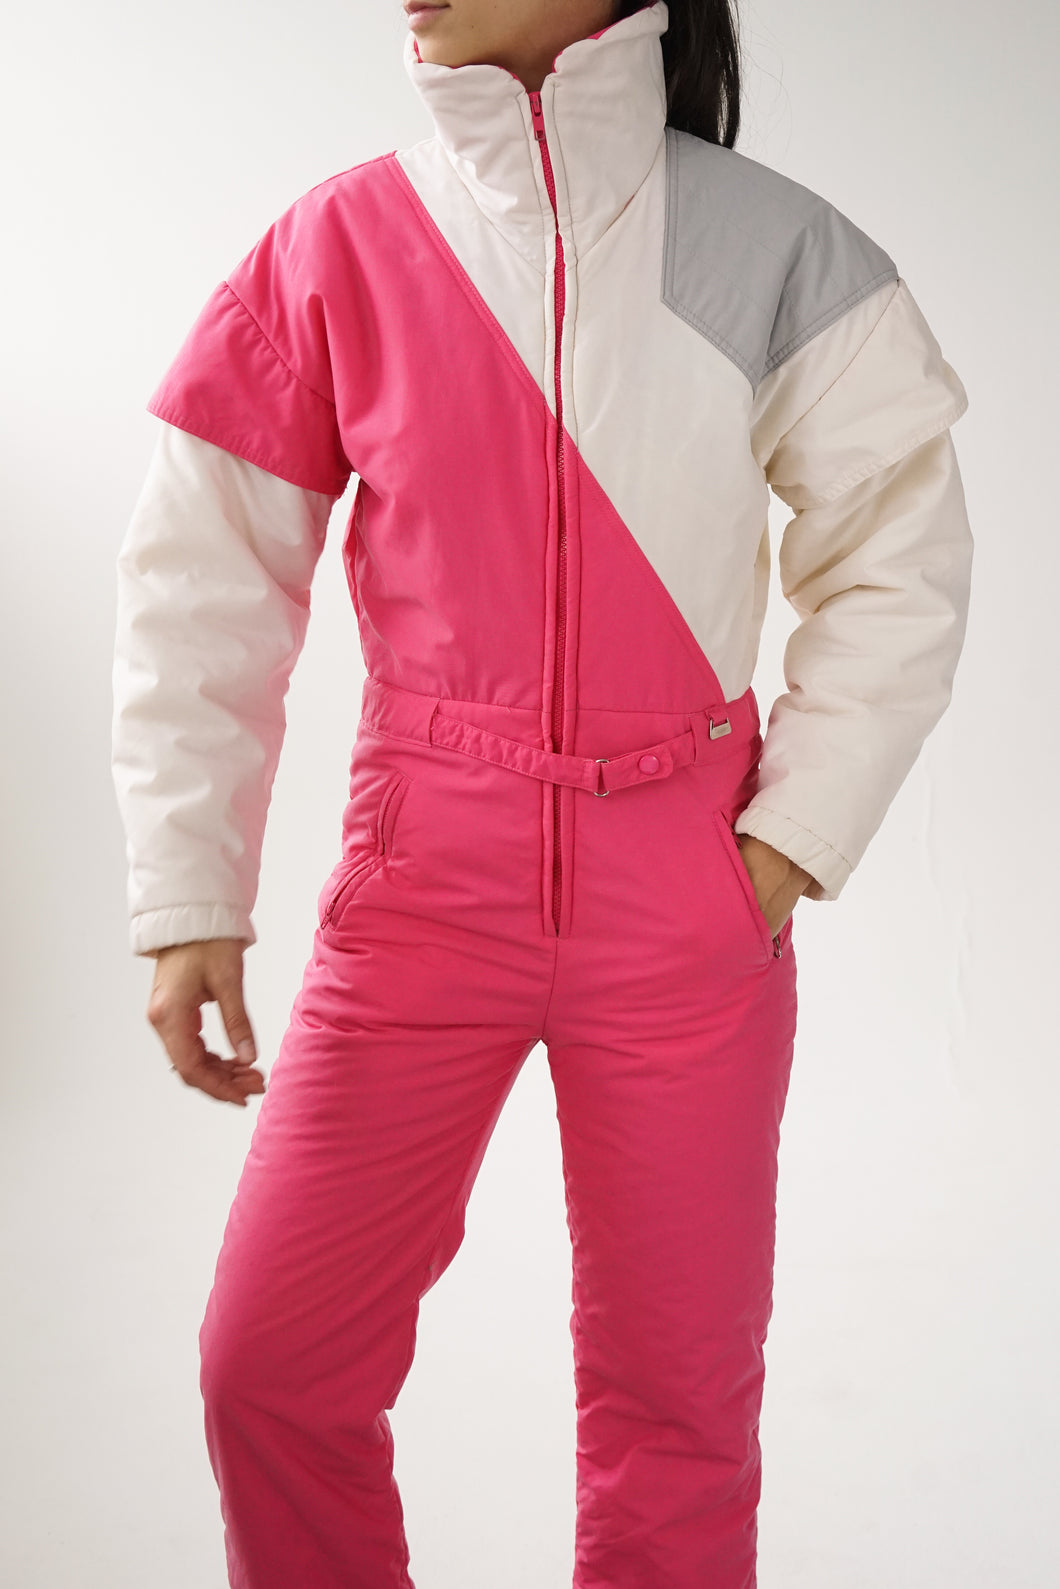 One piece retro Snugglen ski suit, snow suit rose et blanc pour femme petite taille S usé*